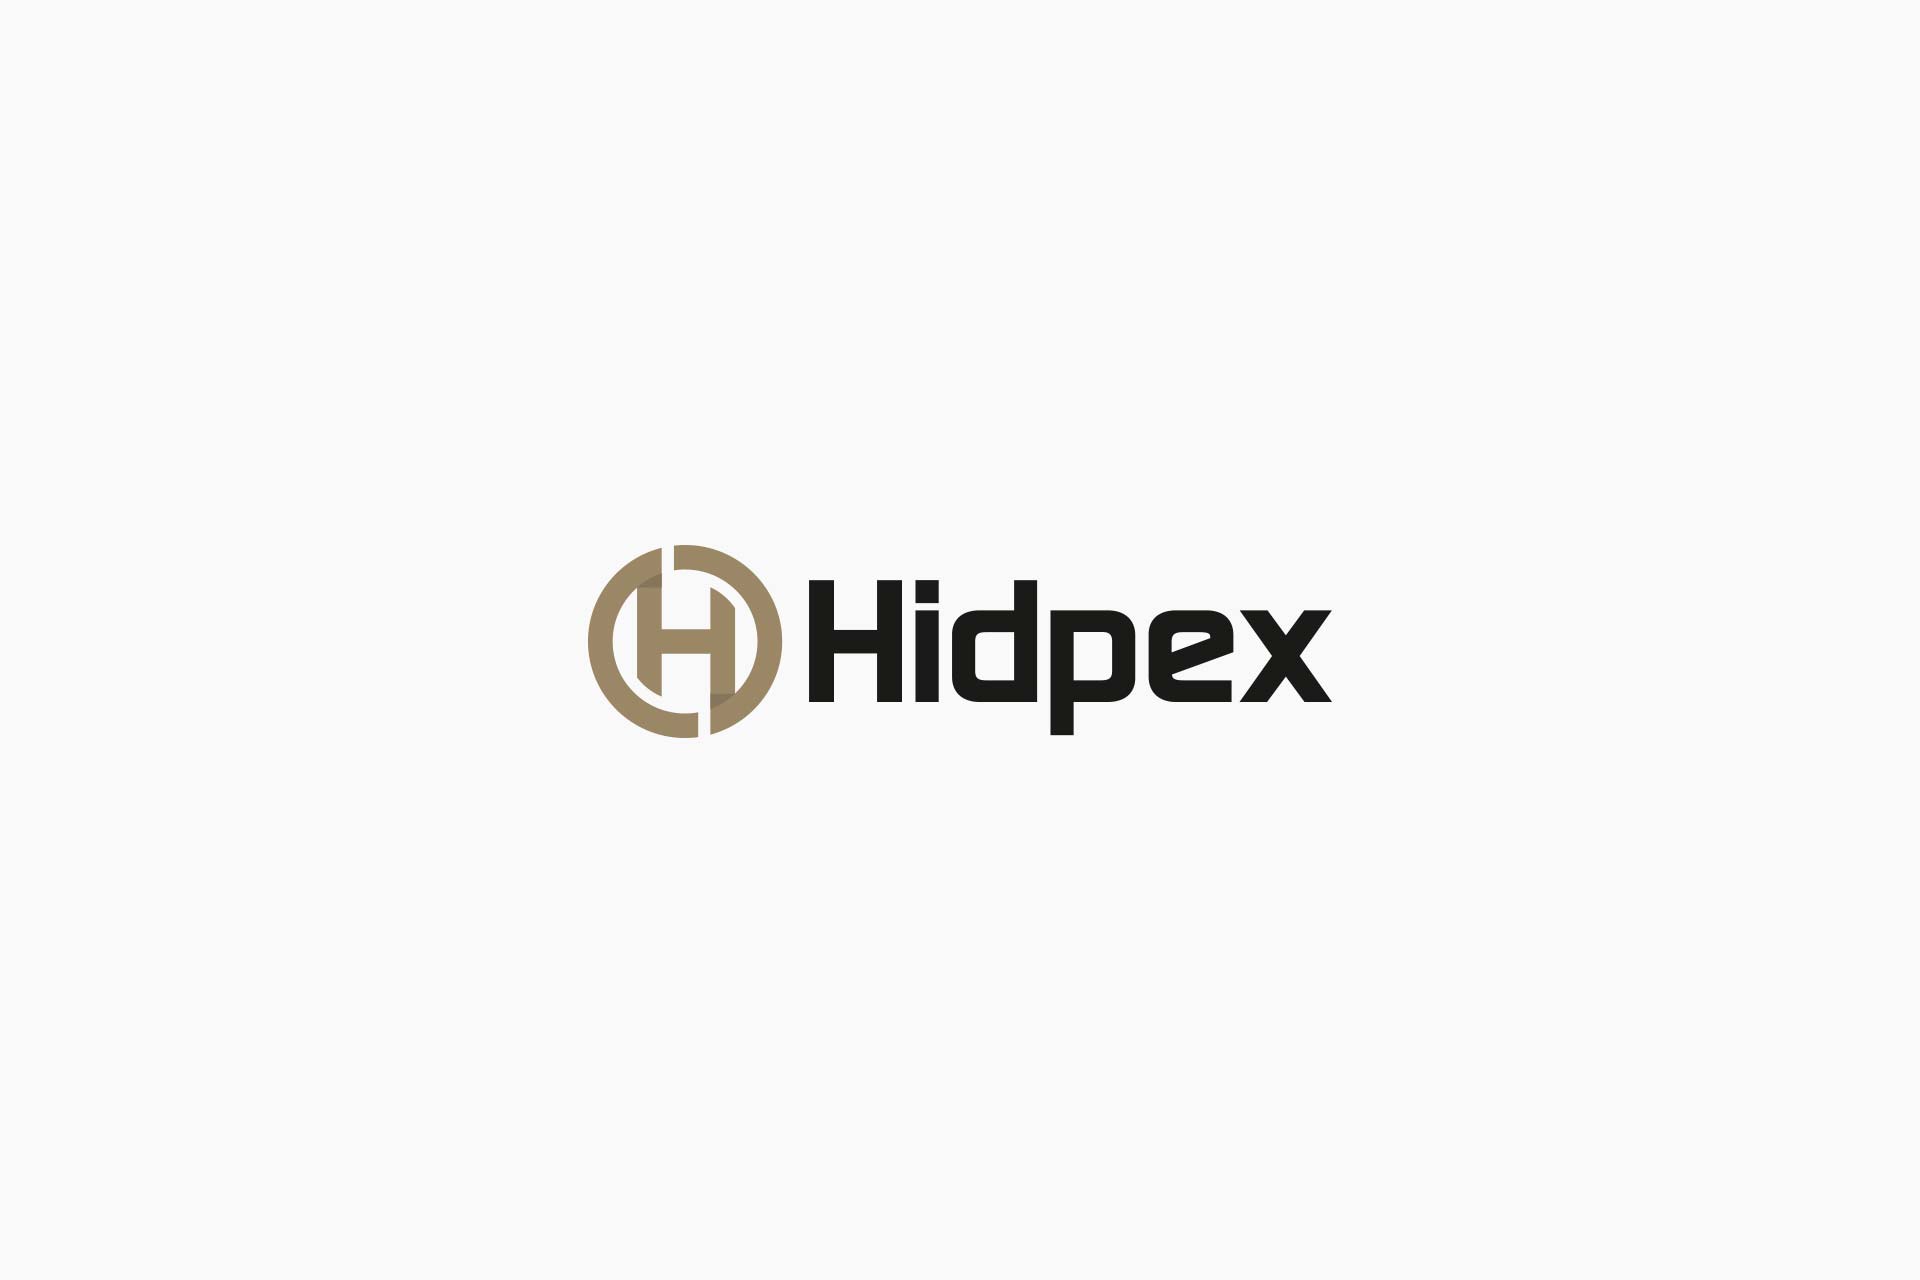 Hidpex logo